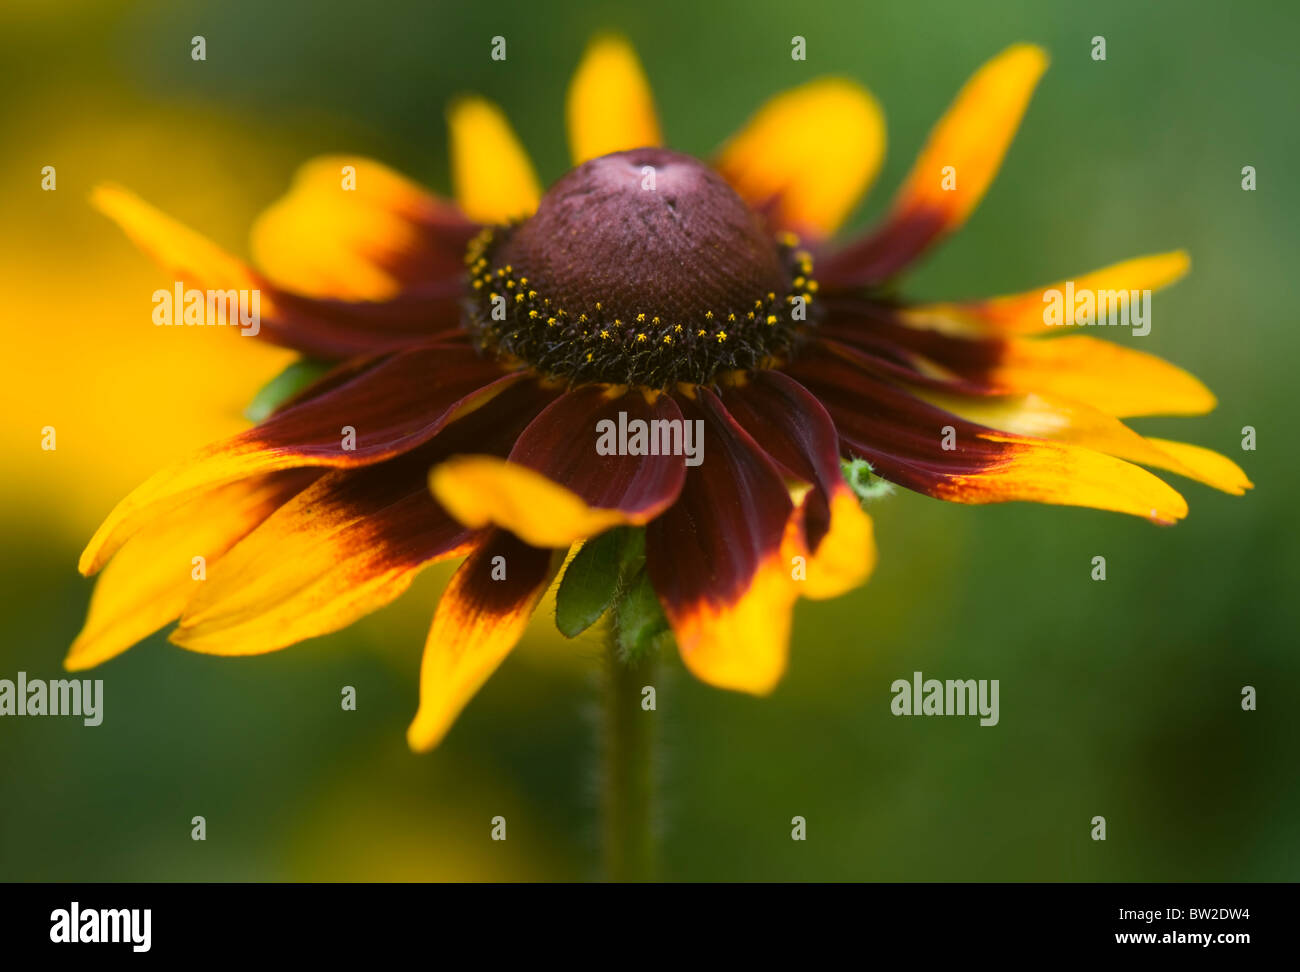 Nahaufnahme Bild der schönen Sommer blühenden Rudbeckia Hirta "Marmelade" auch bekannt als Black-Eyed Susan Blume. Stockfoto